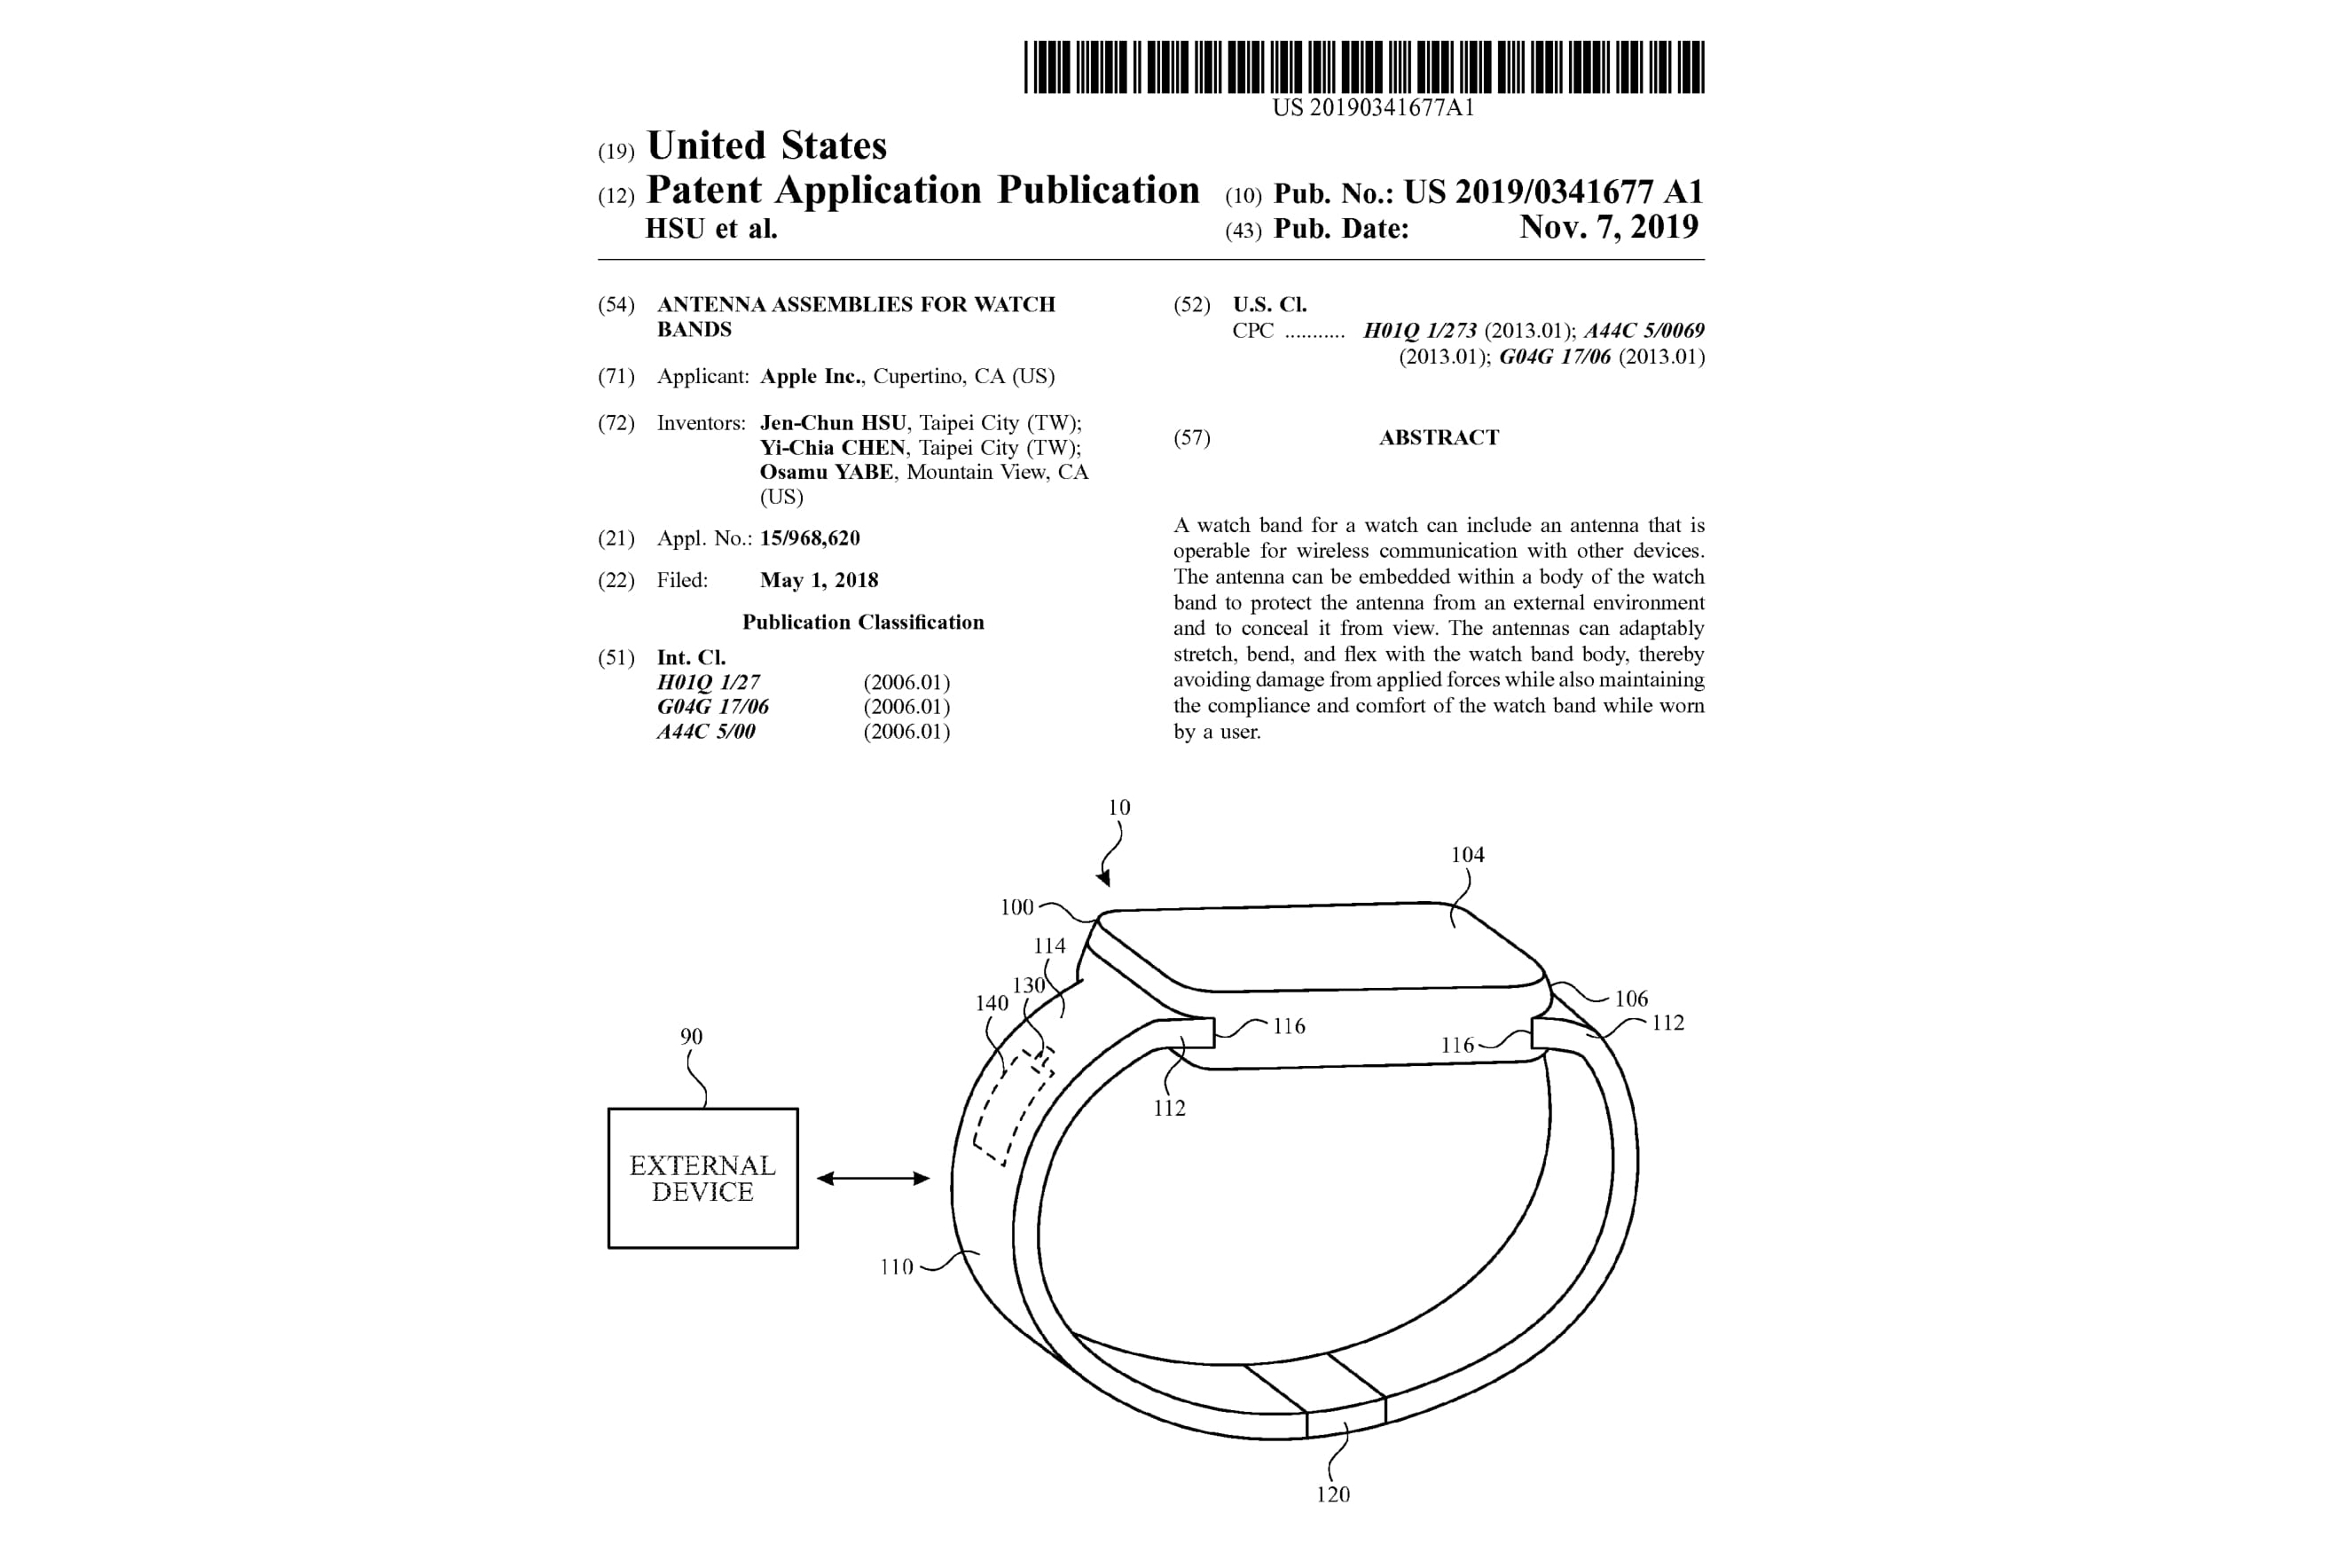 Apple presenta una nueva patente para Apple Watch